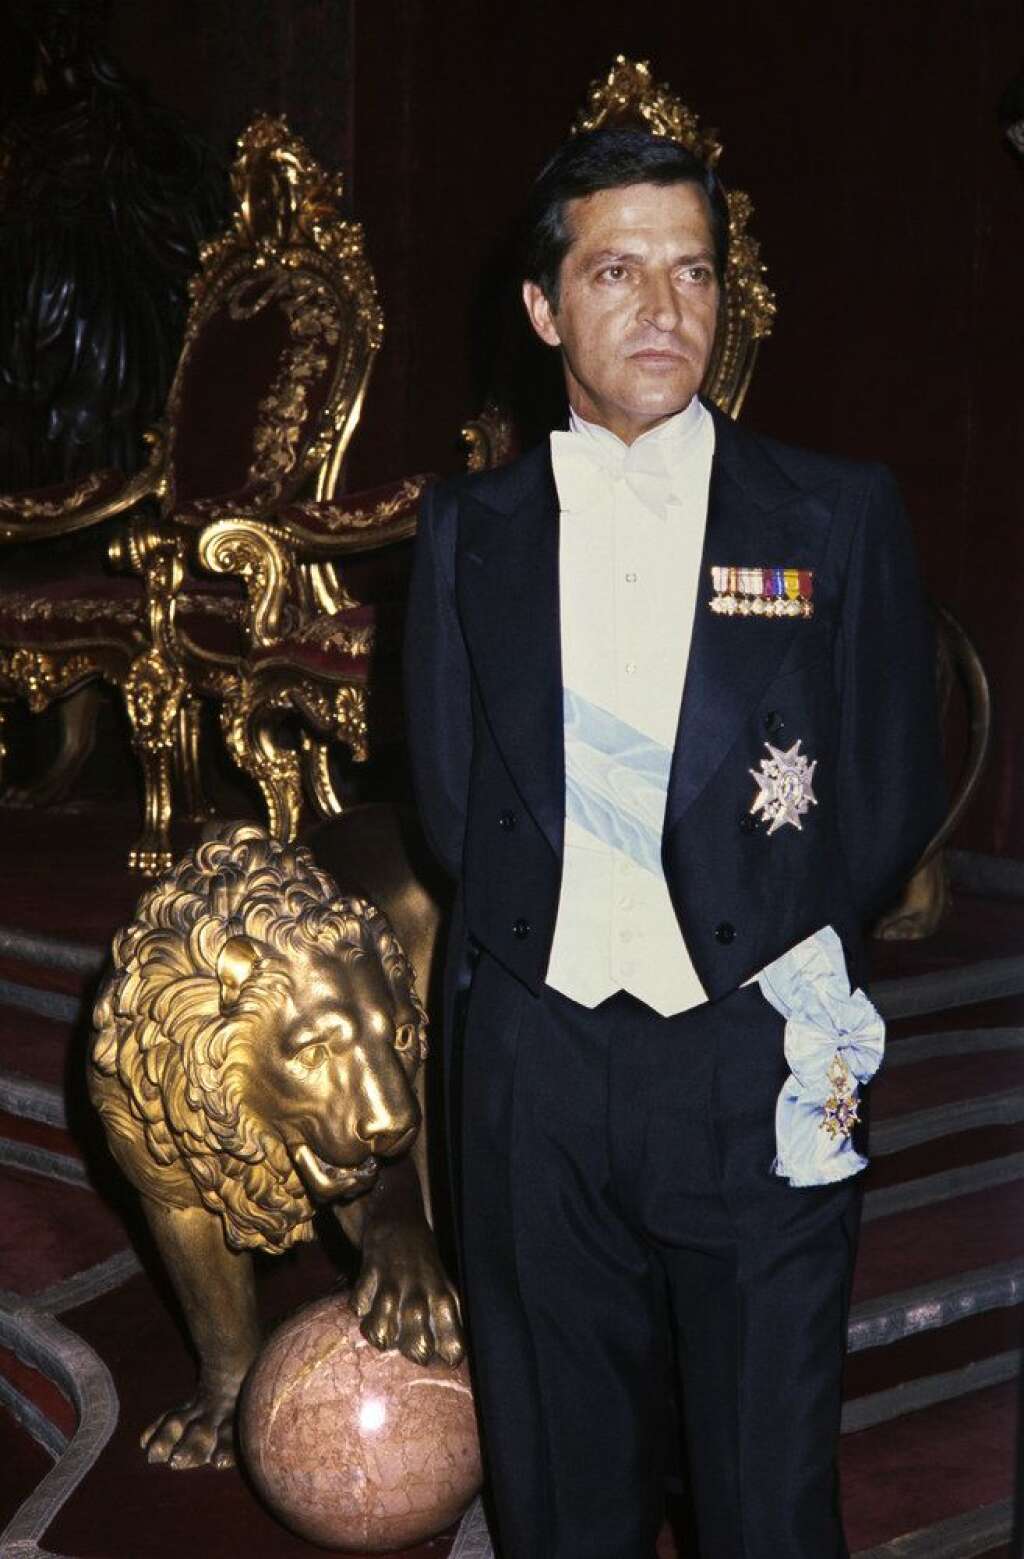 23 mars - Adolfo Suarez - L'ancien Premier ministre espagnol, atteint de la maladie d'Alzheimer, est décédé à l'âge de 81 ans. Il avait été nommé par le roi Juan Carlos pour assurer la transition démocratique après la période franquiste, de 1976 à 1981.